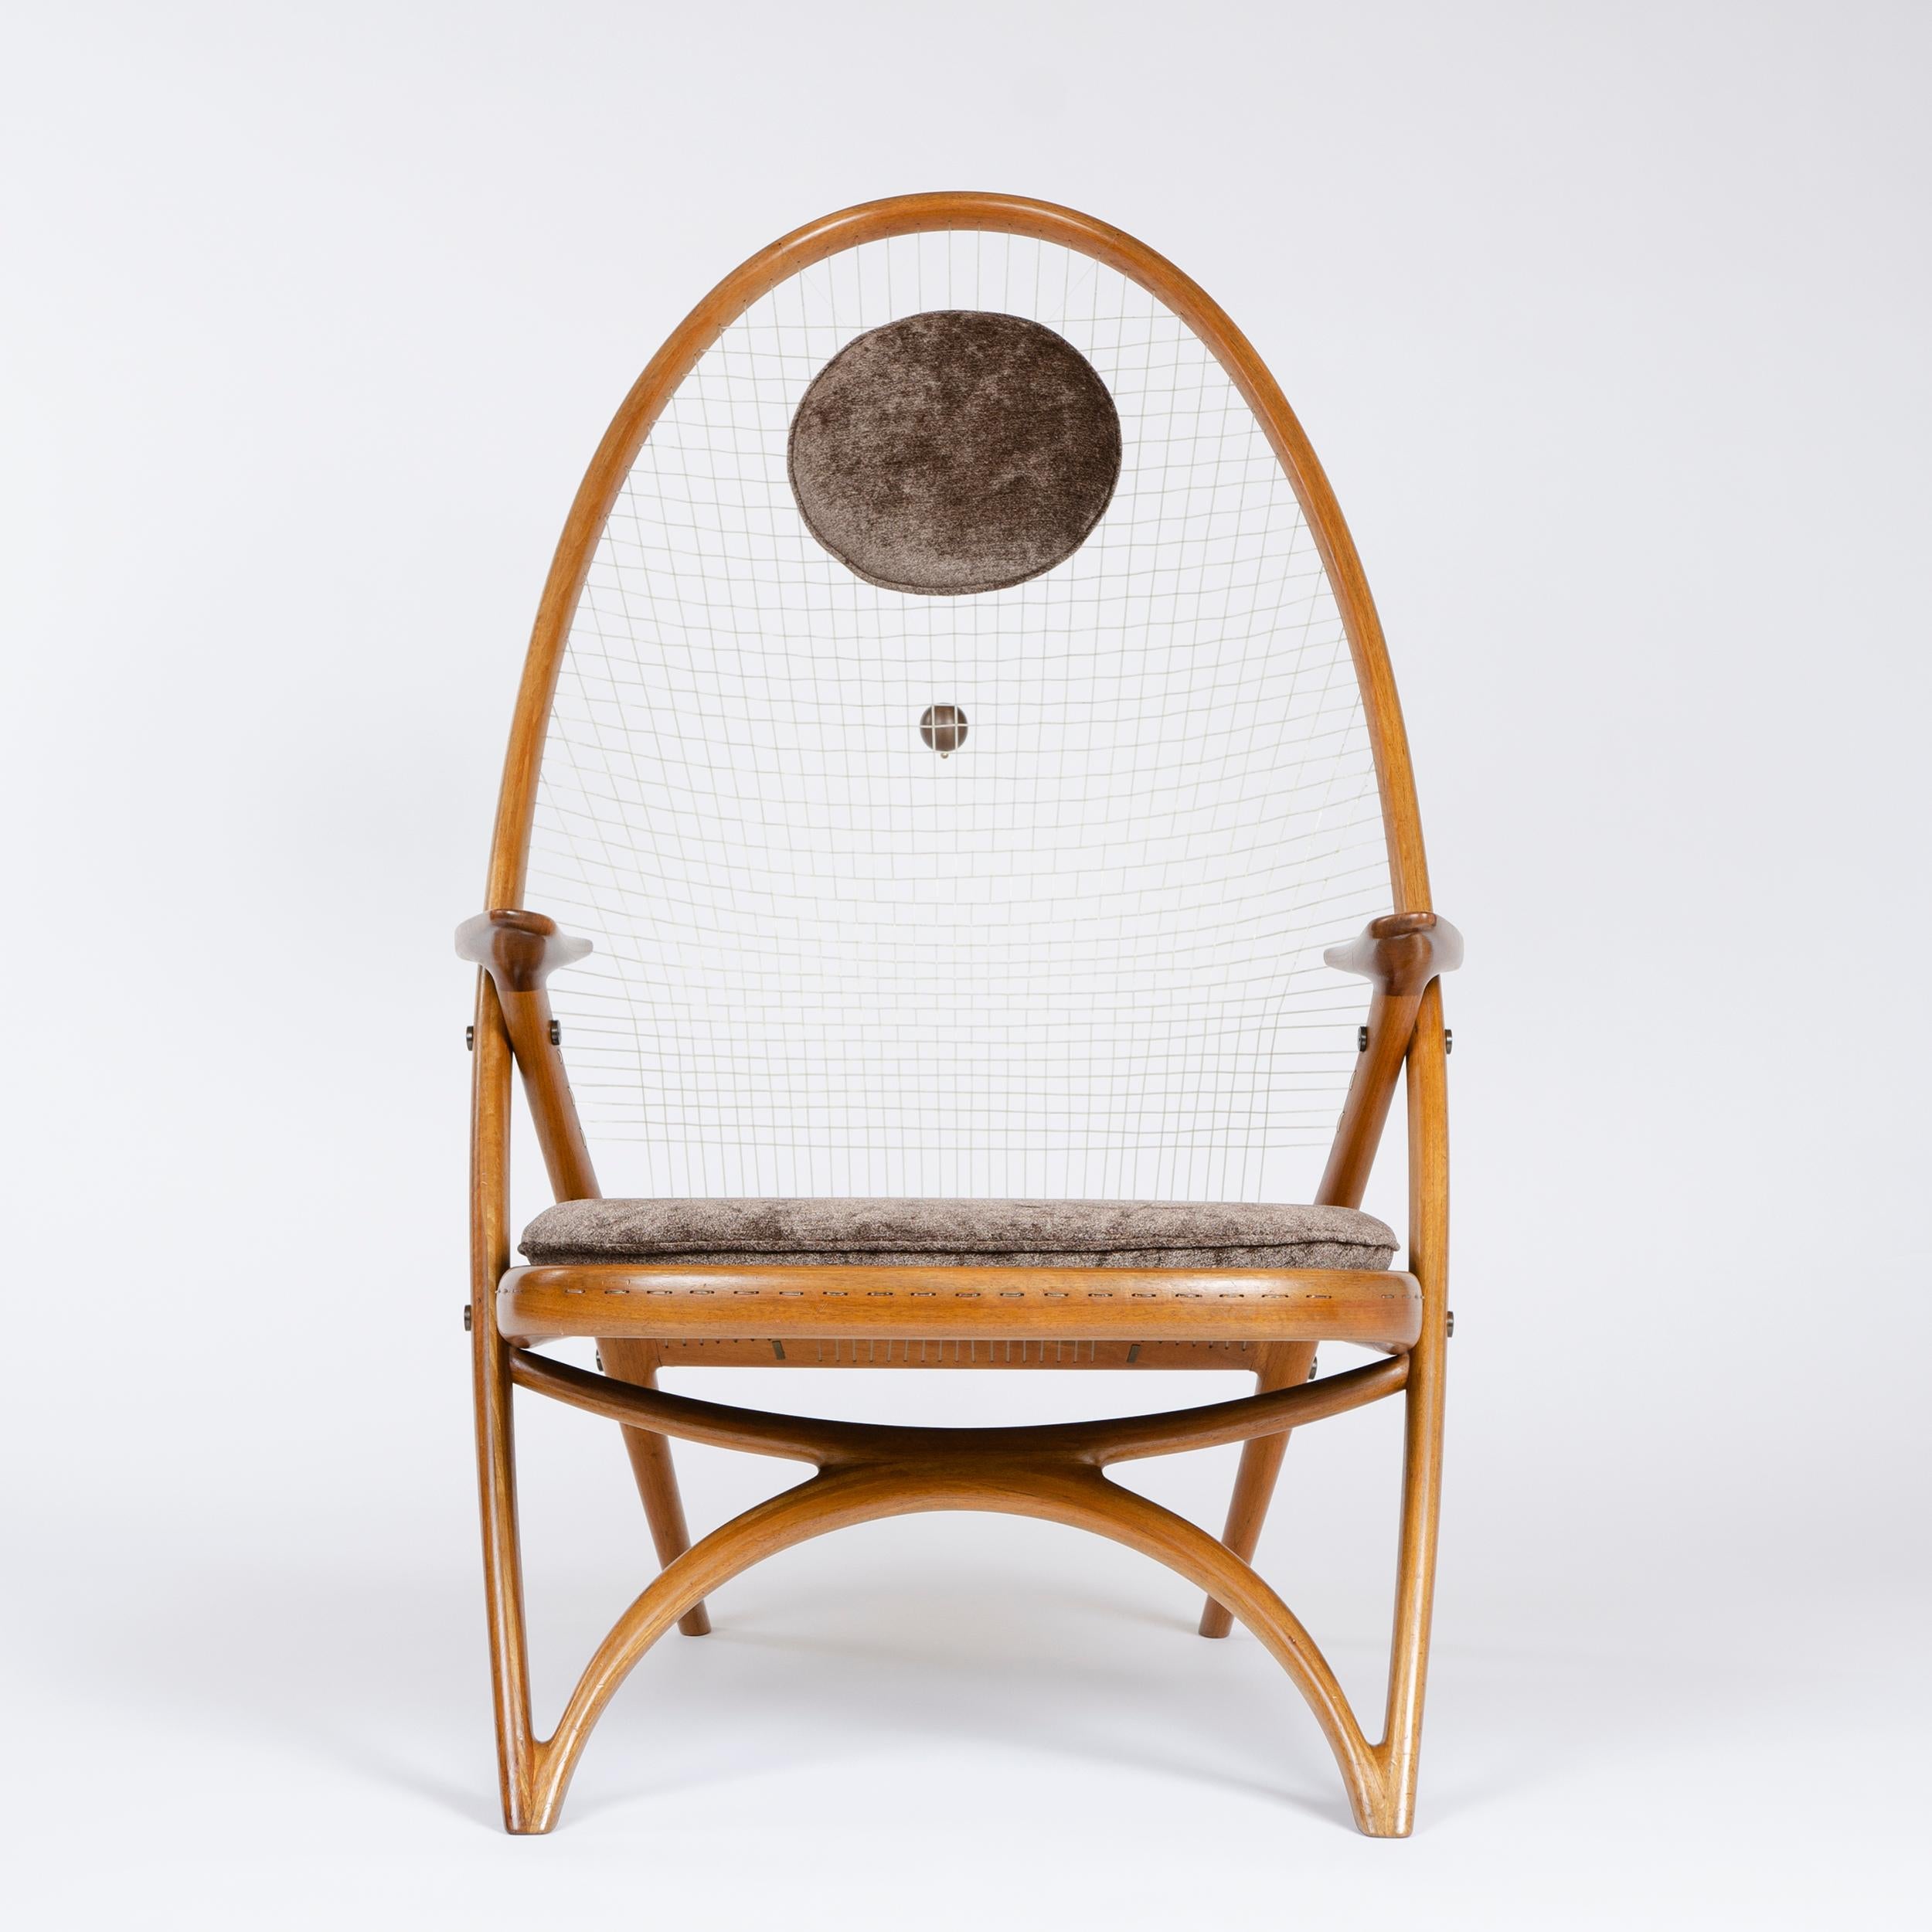 Un fauteuil rare conçu par l'architecte Helge Vestergaard Jensen et fabriqué par l'ébéniste Peder Pedersen pour l'exposition de 1955. La chaise Racquet Chair rappelle nettement la chaise Windsor, bien que la technique moderne de laminage ait rendu